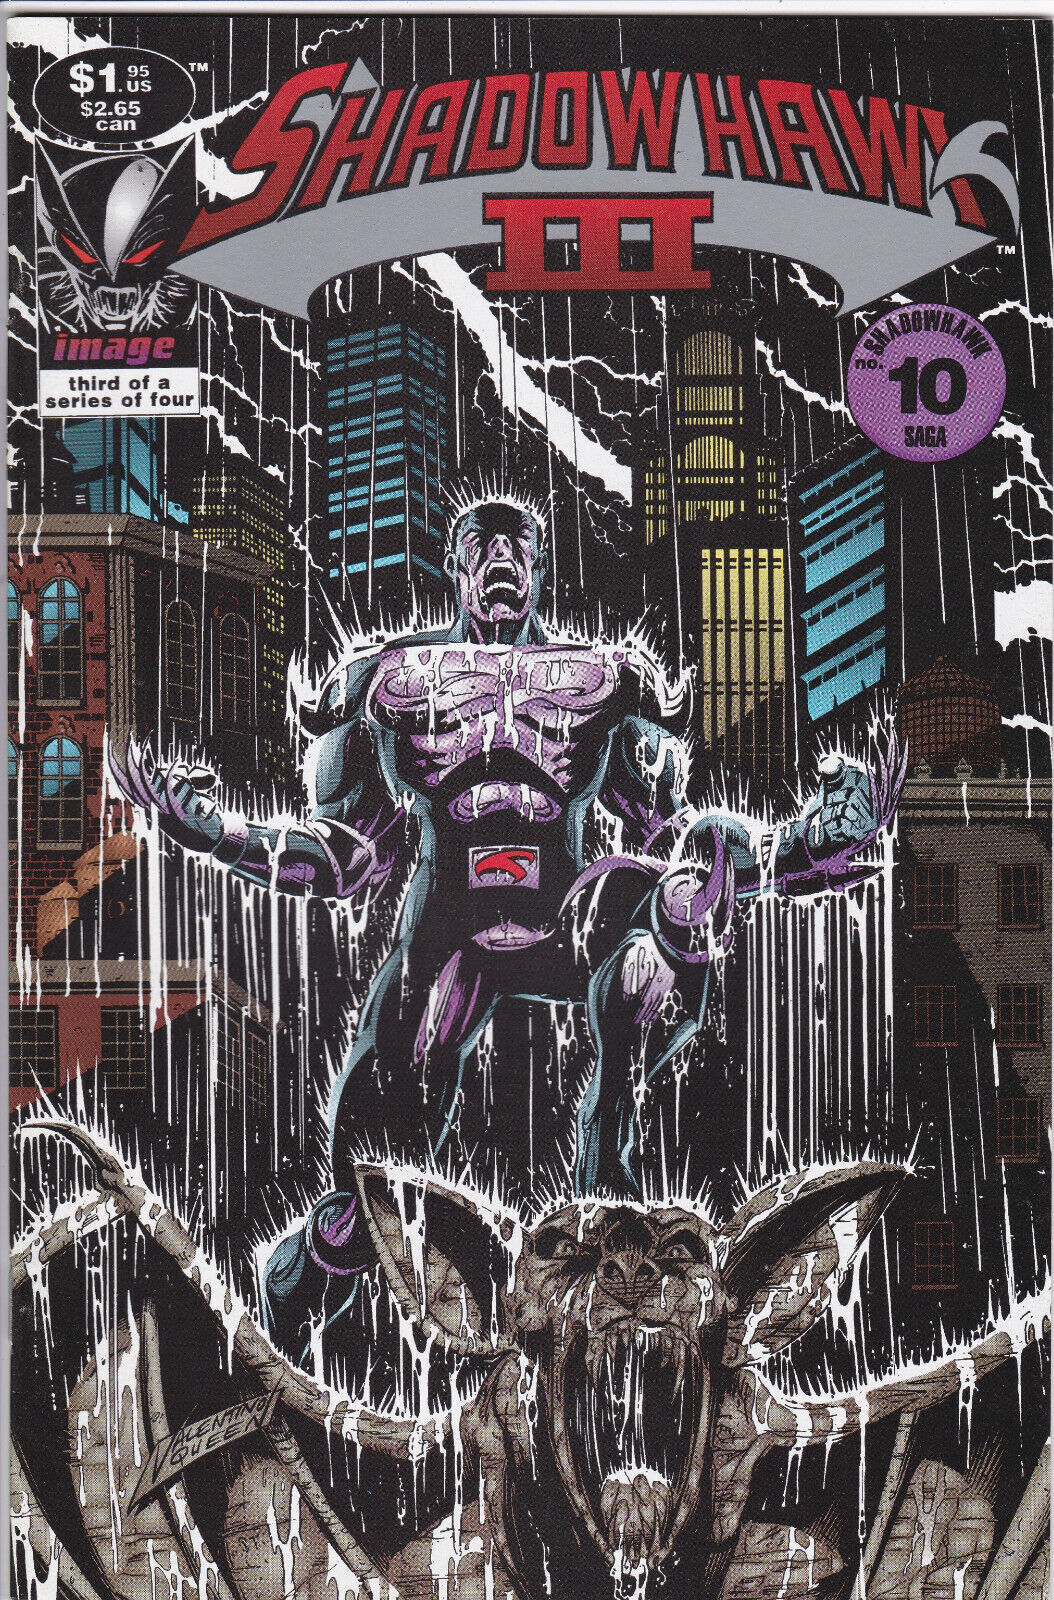 Shadowhawk III, #3(10), Vol. 3 (1993-1994) Image Comics